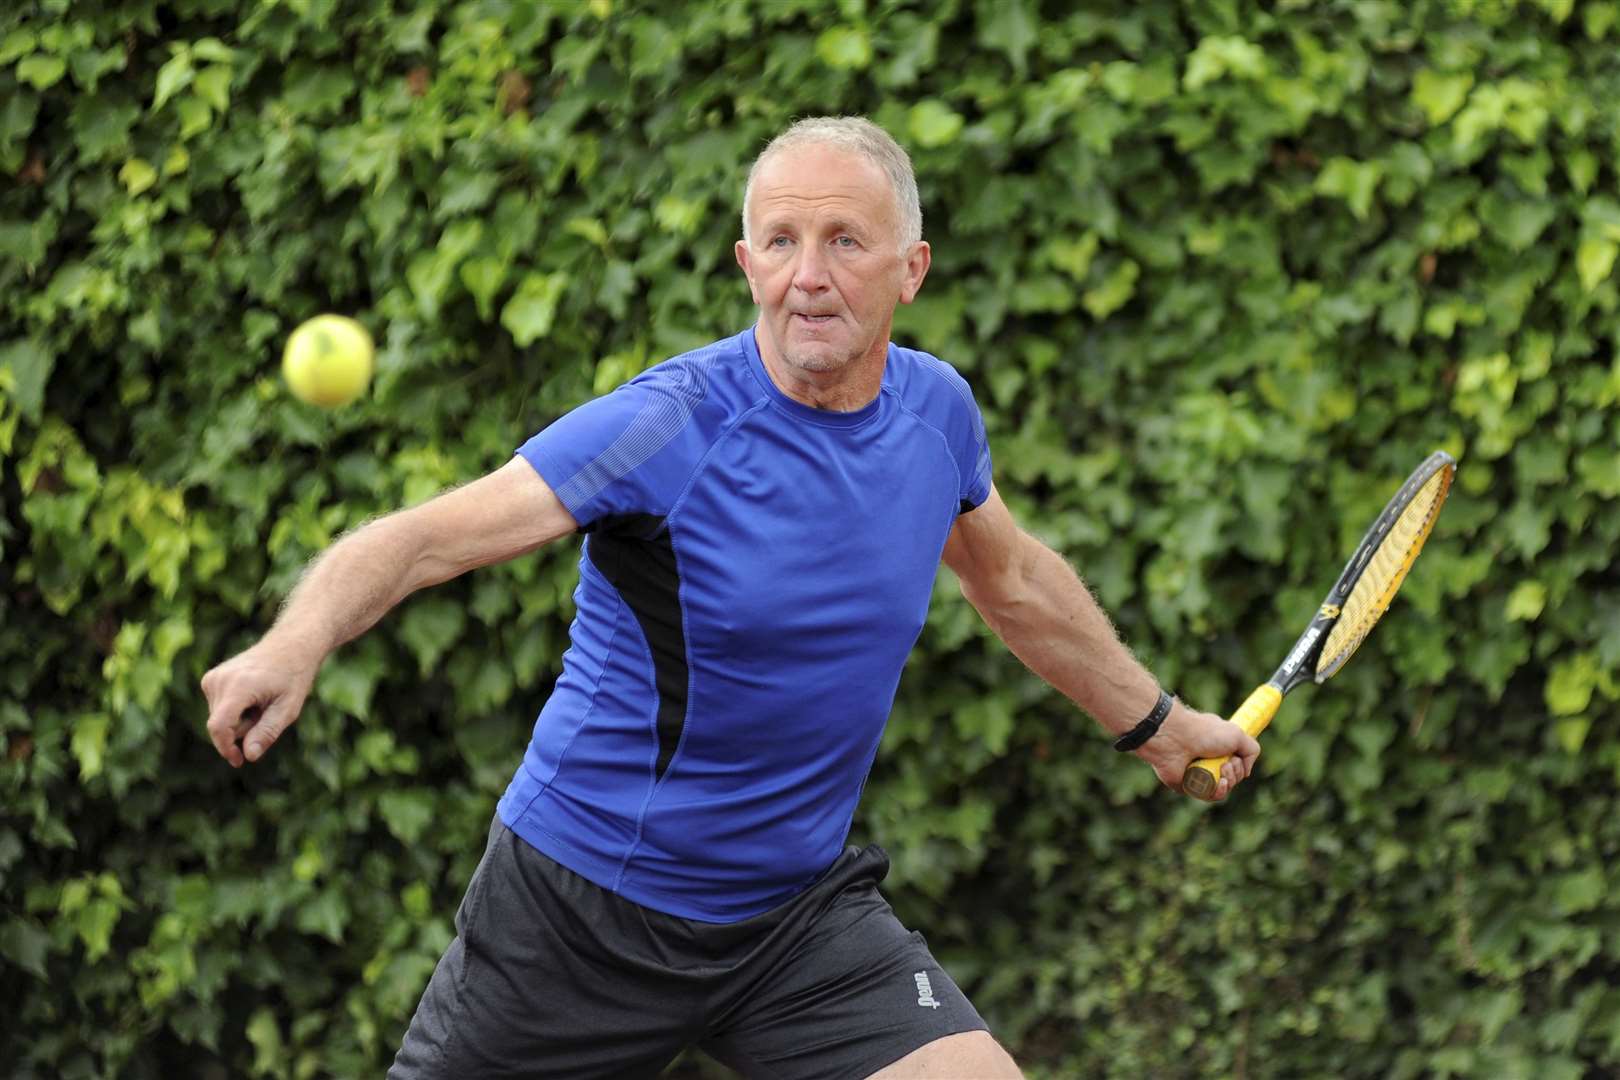 Jim Meisner was in action for Elgin Tennis Club.